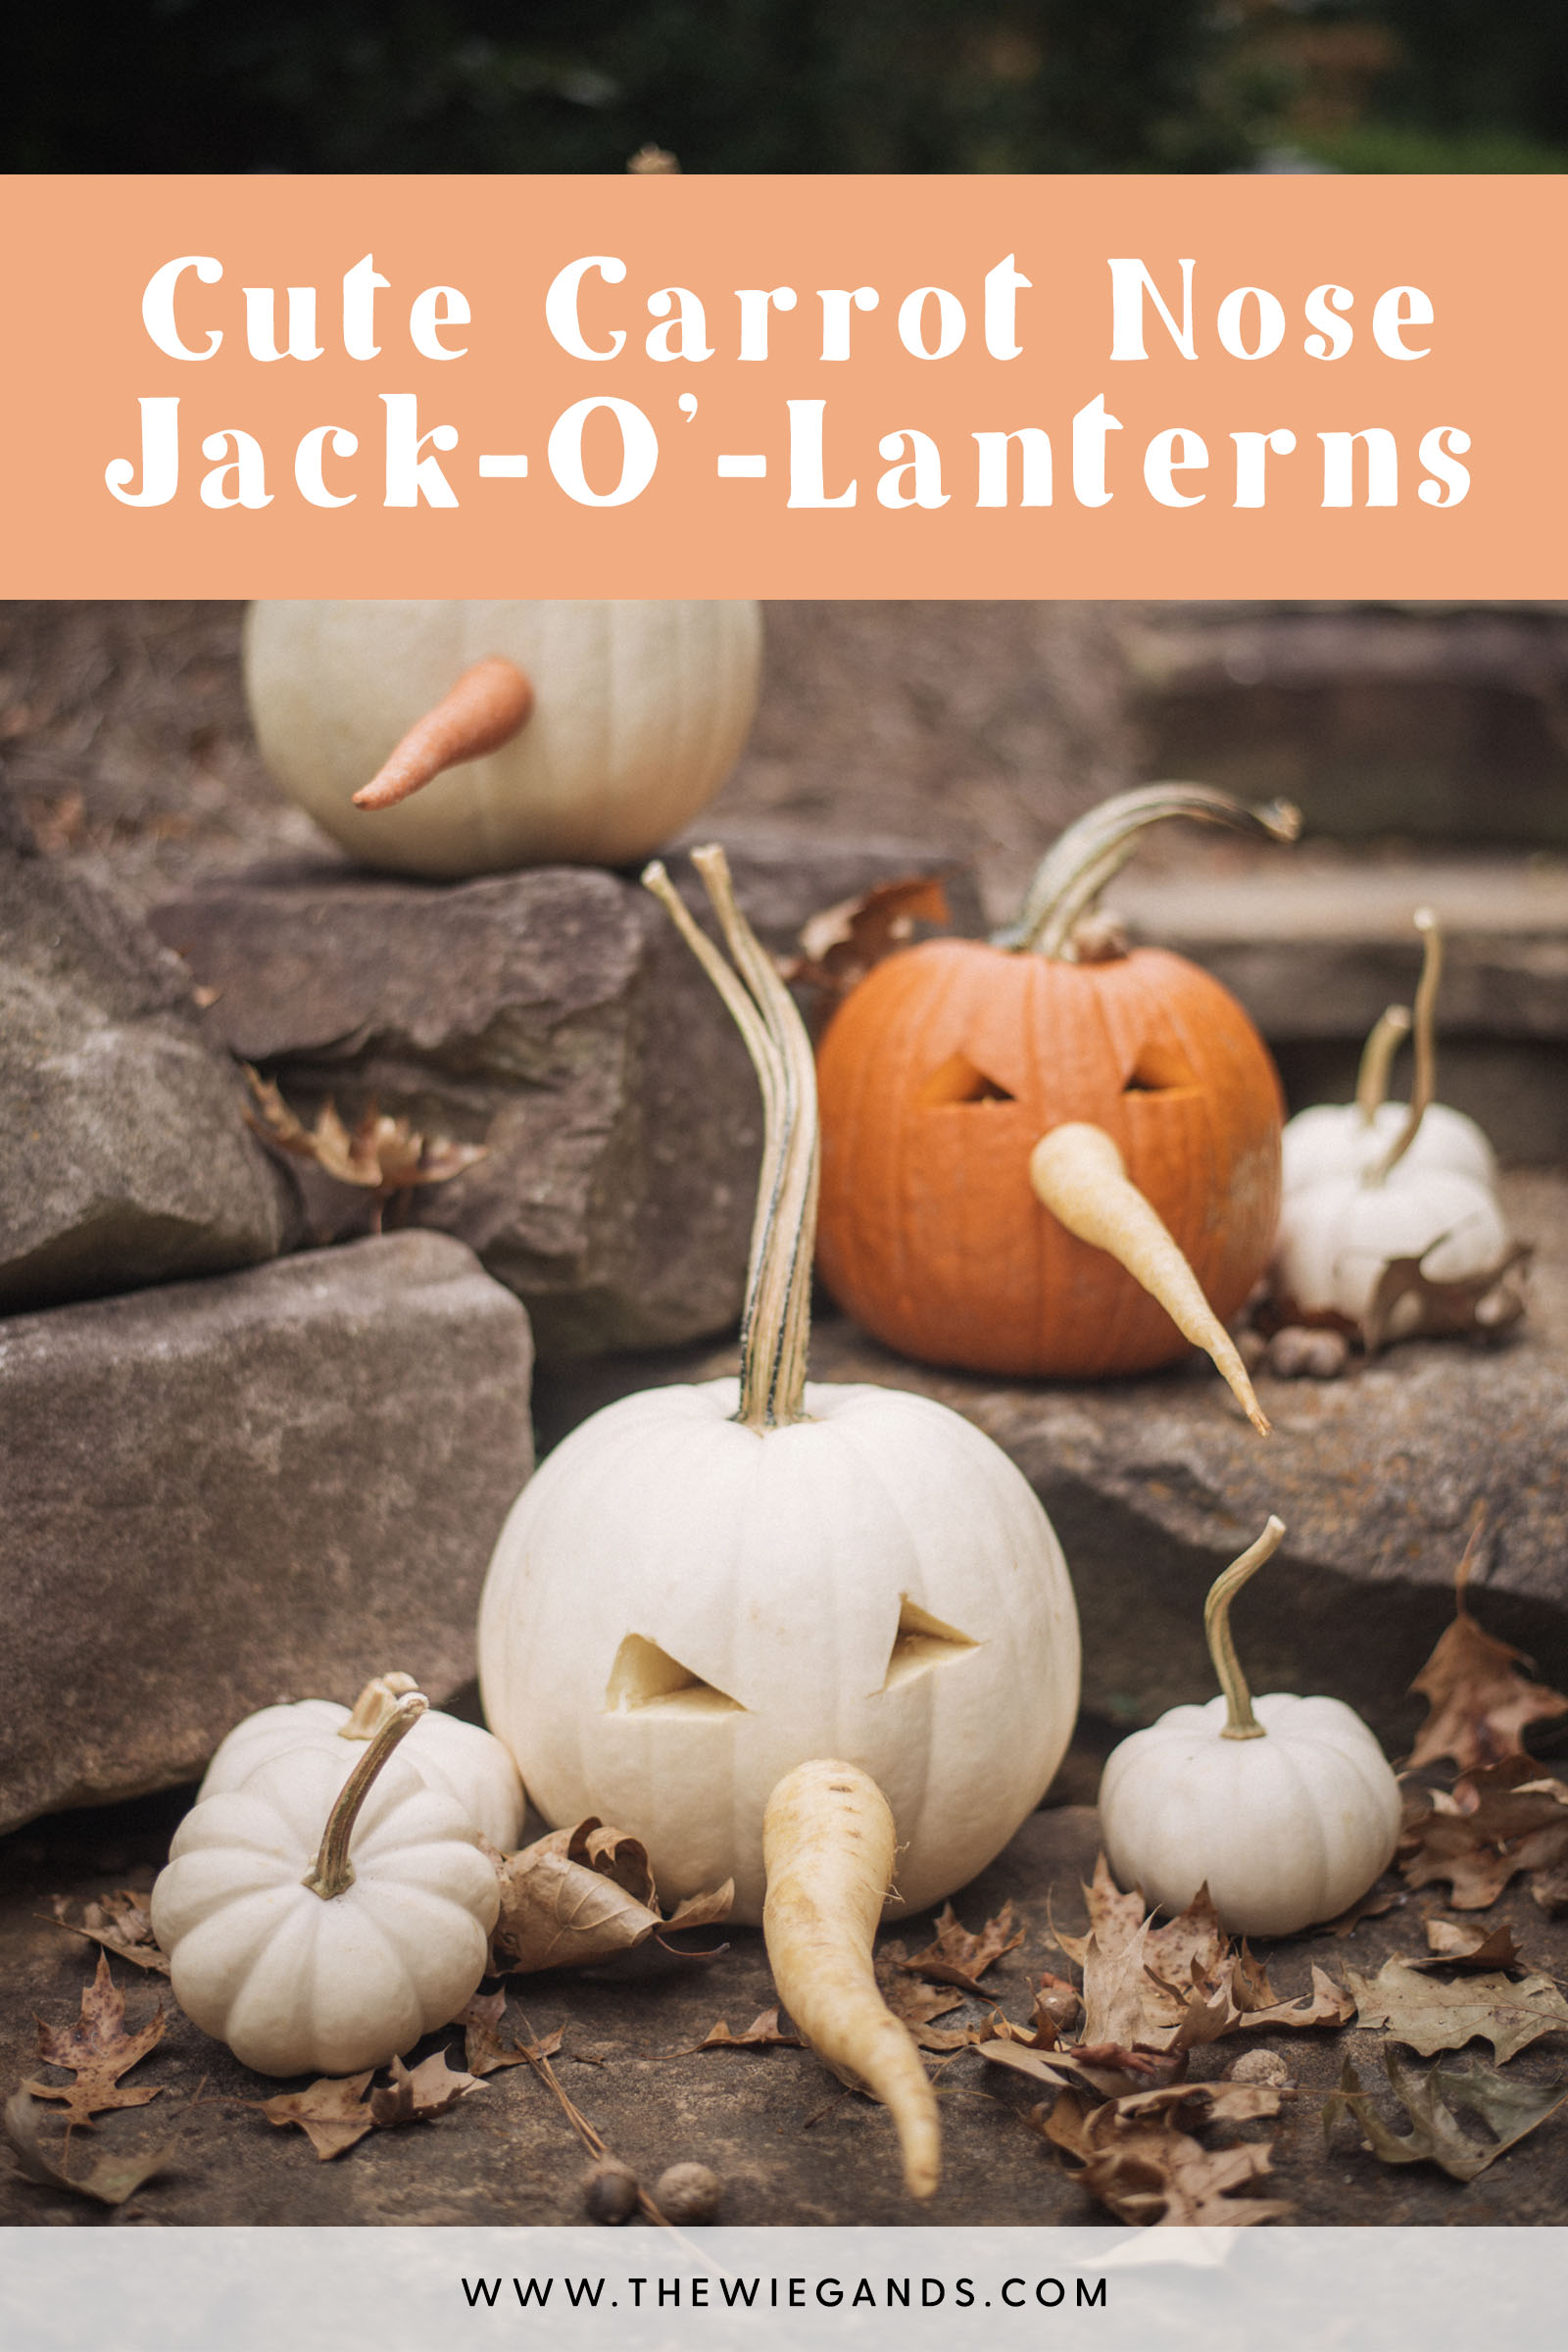 jack o lantern